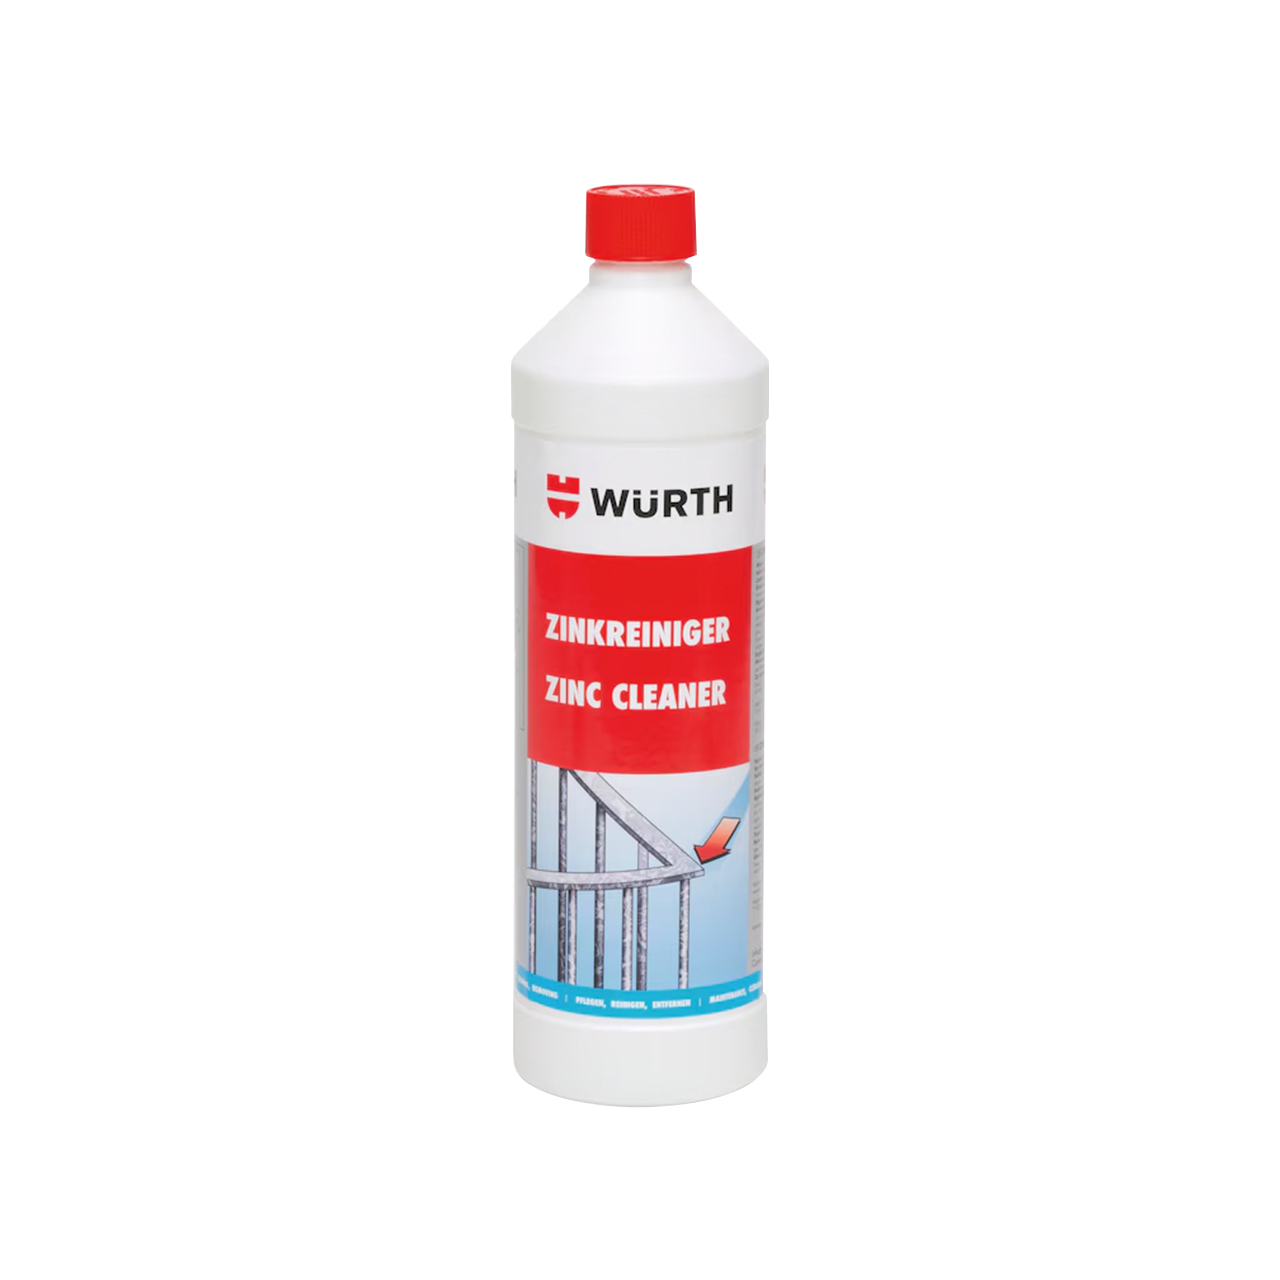 Zinkreiniger von Würth - 1000ml Flasche